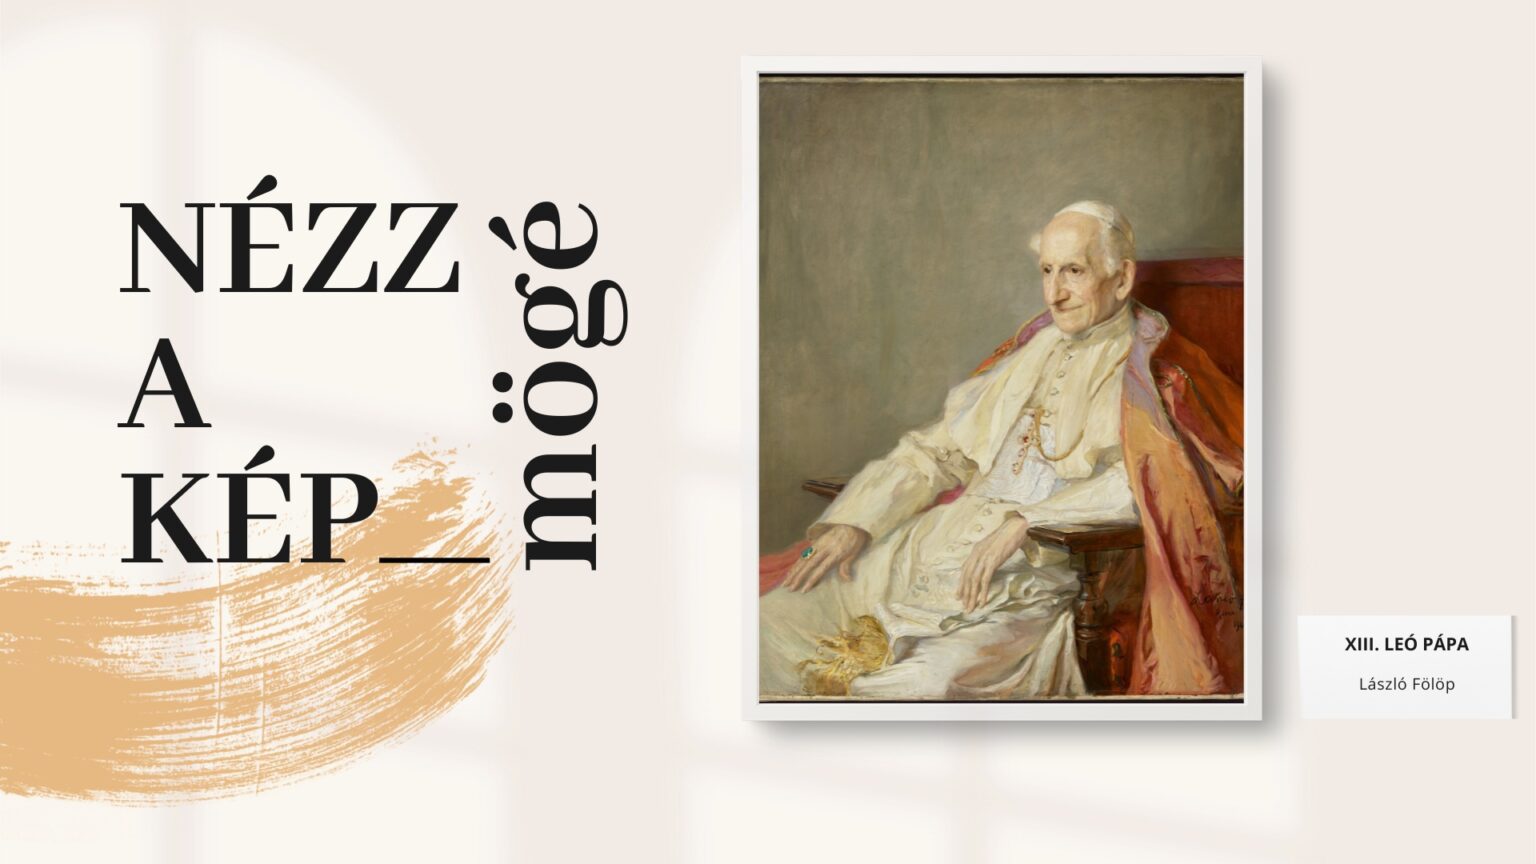 Nagyság, természetesség, esendőség – László Fülöp, az utolsó reneszánsz festő